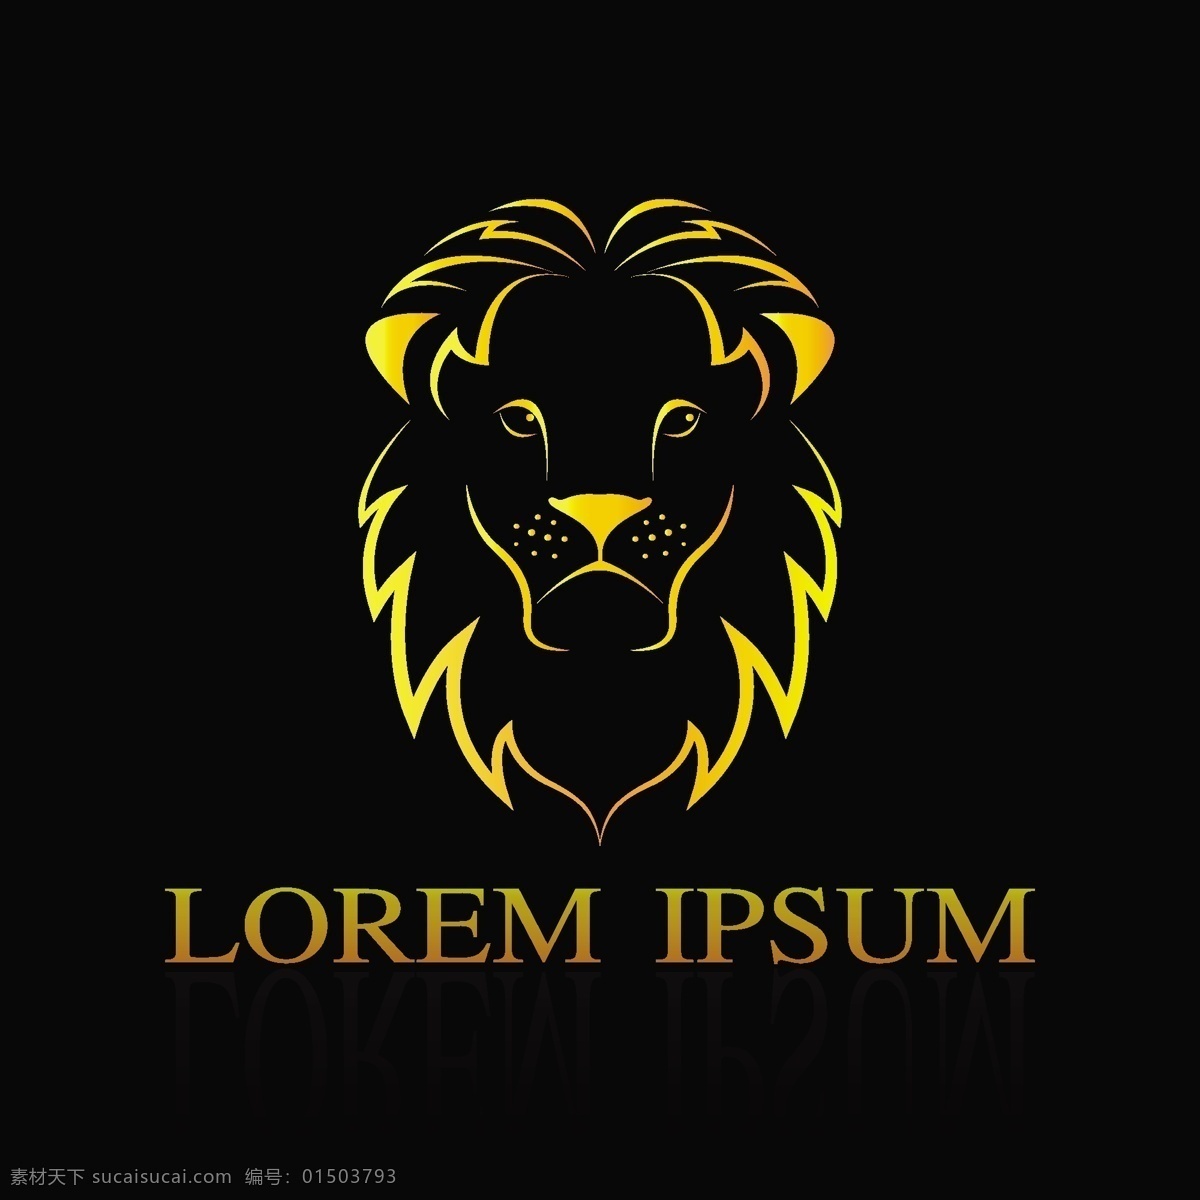 狮子图标 狮子 雄狮 狮子王 森林之王 狮子动物 狮子标志 狮子logo 野生动物 生物世界